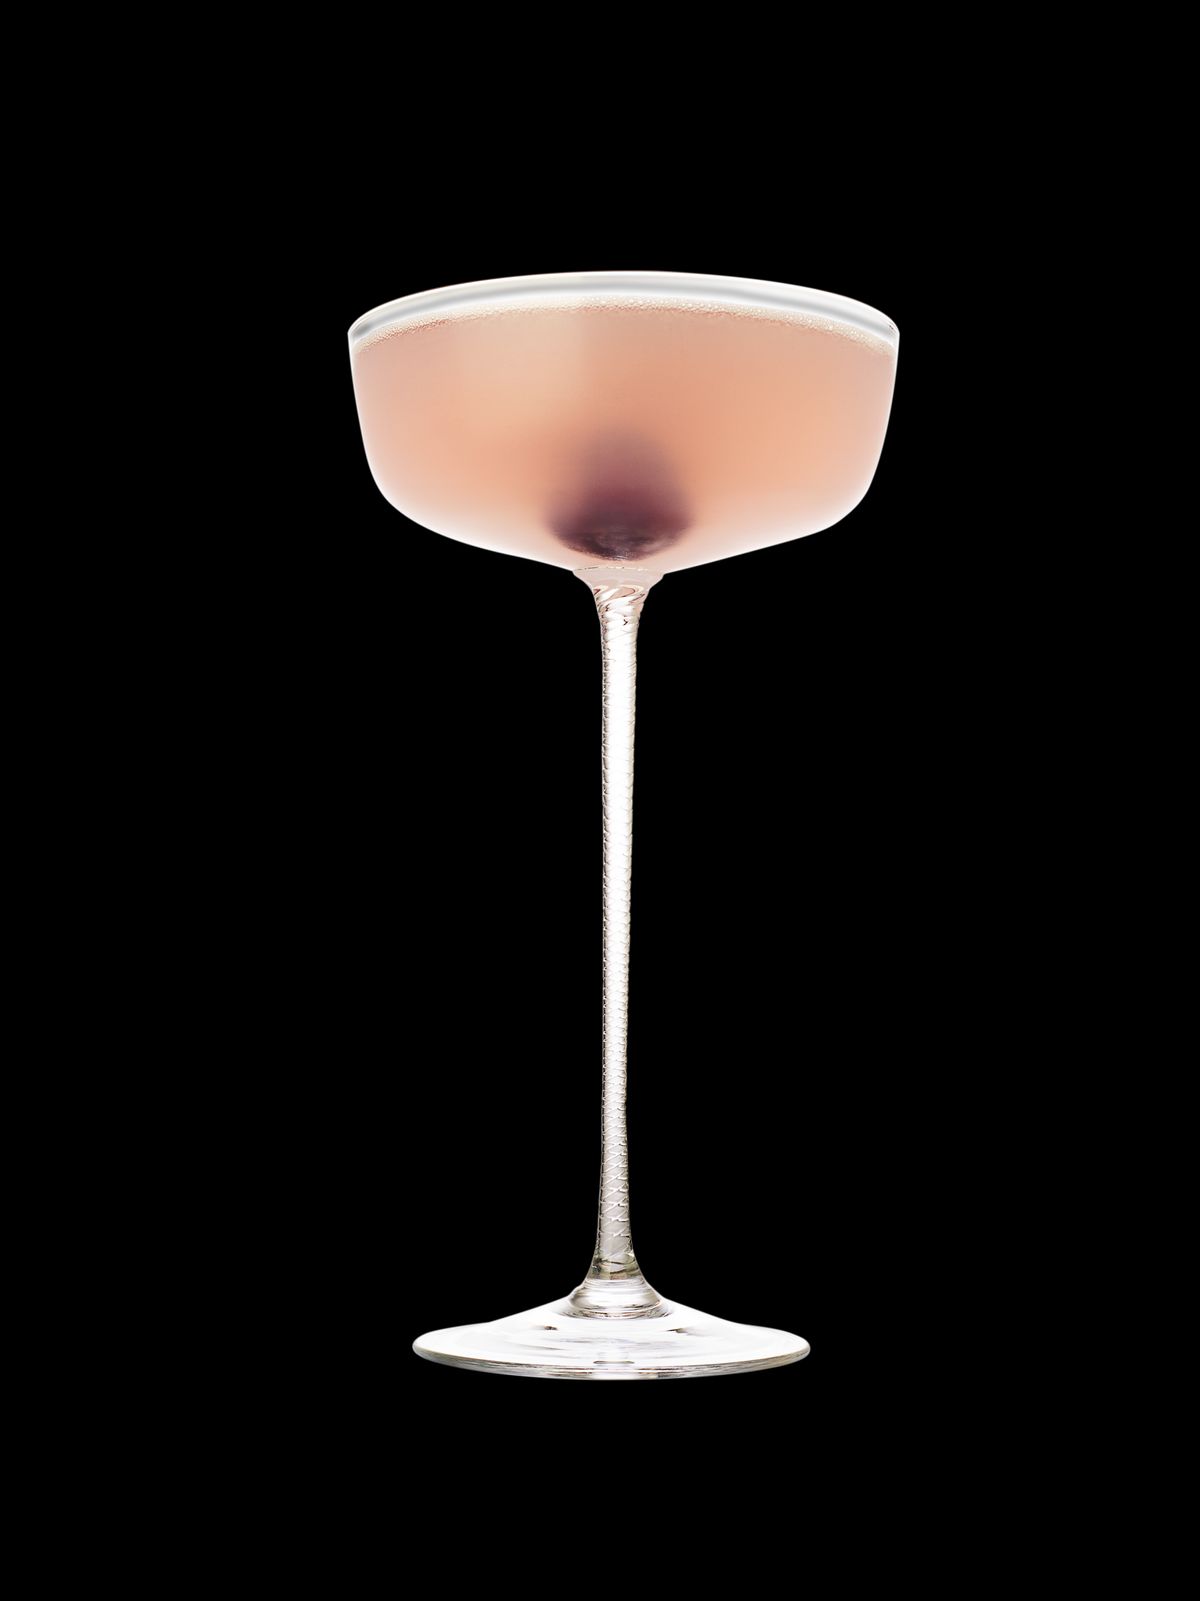 Valentinstags-Cocktail Aviation: Rezept mit Maraschino-Likör